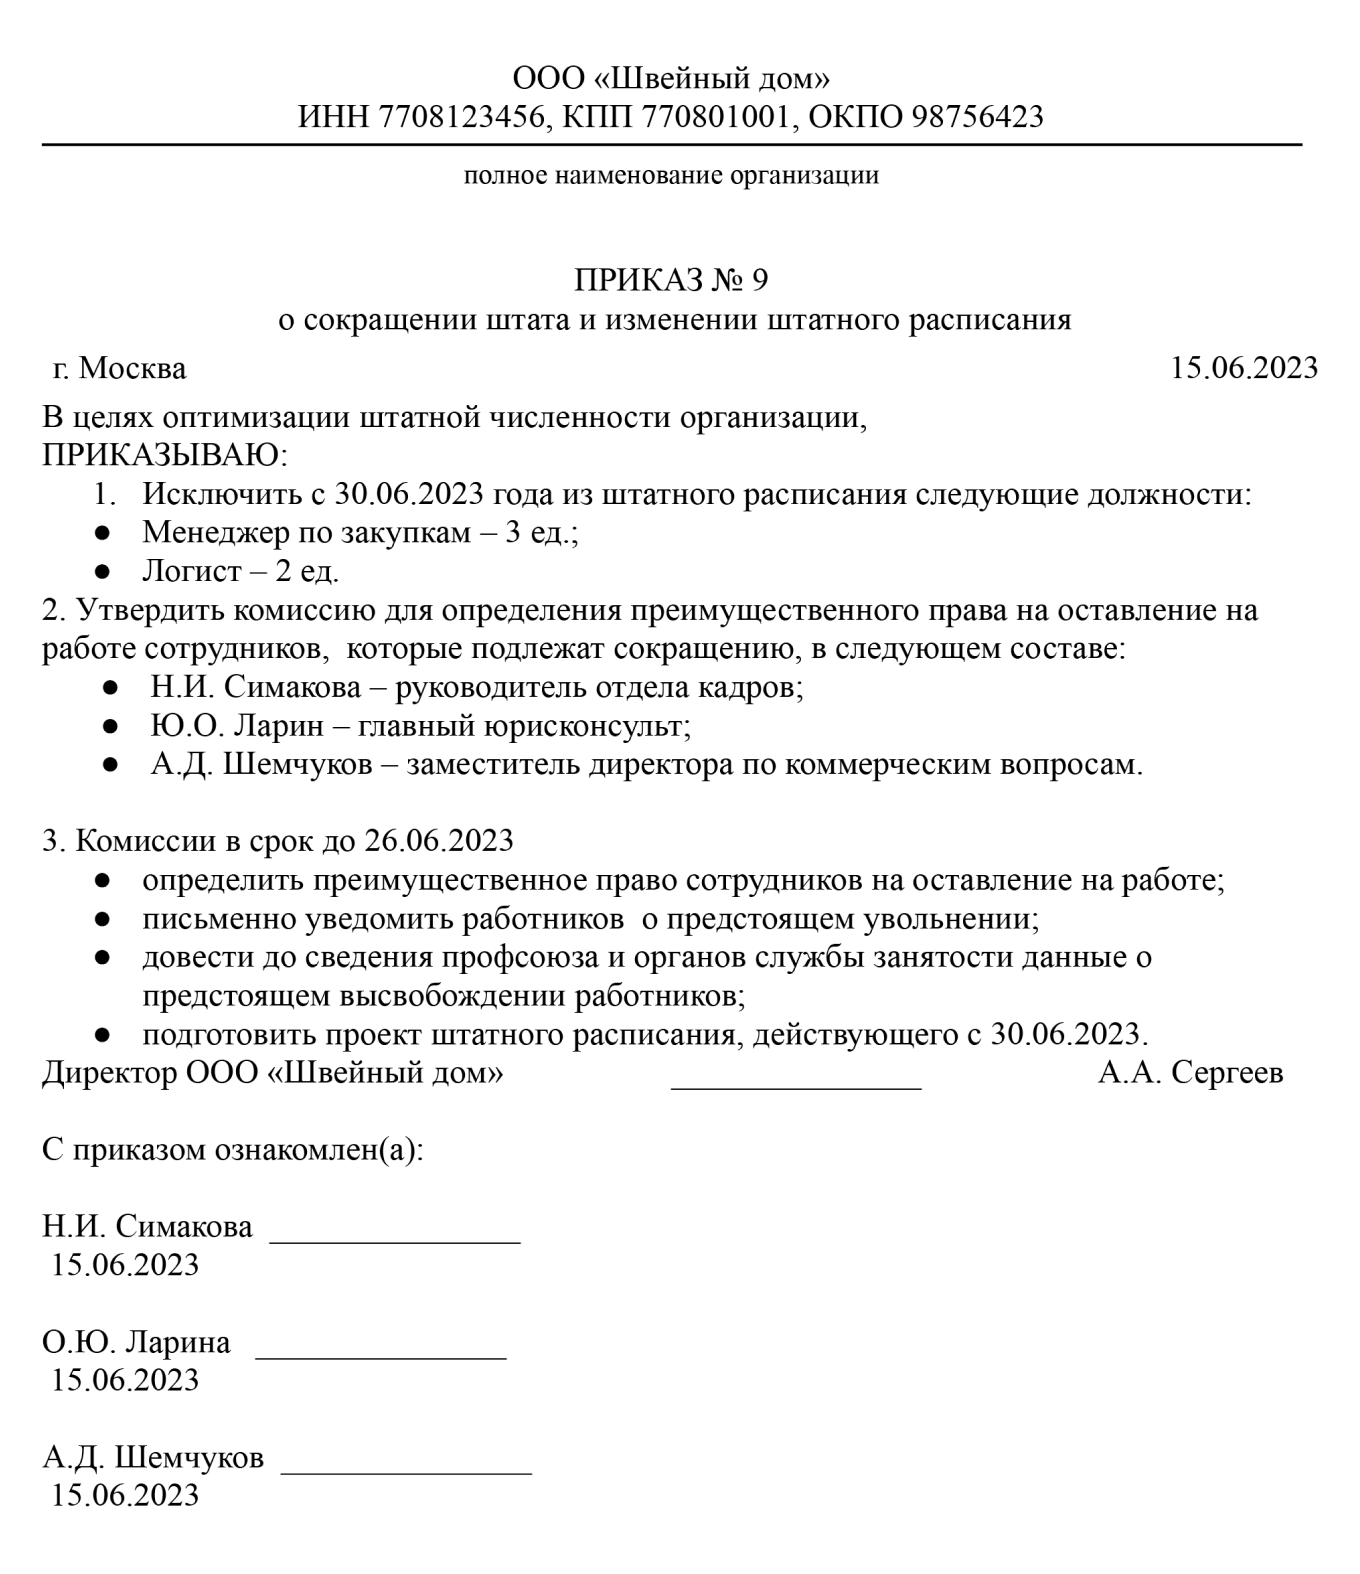 Объединение профсоюзов Татарстана - территориальное объединение организаций профсоюзов